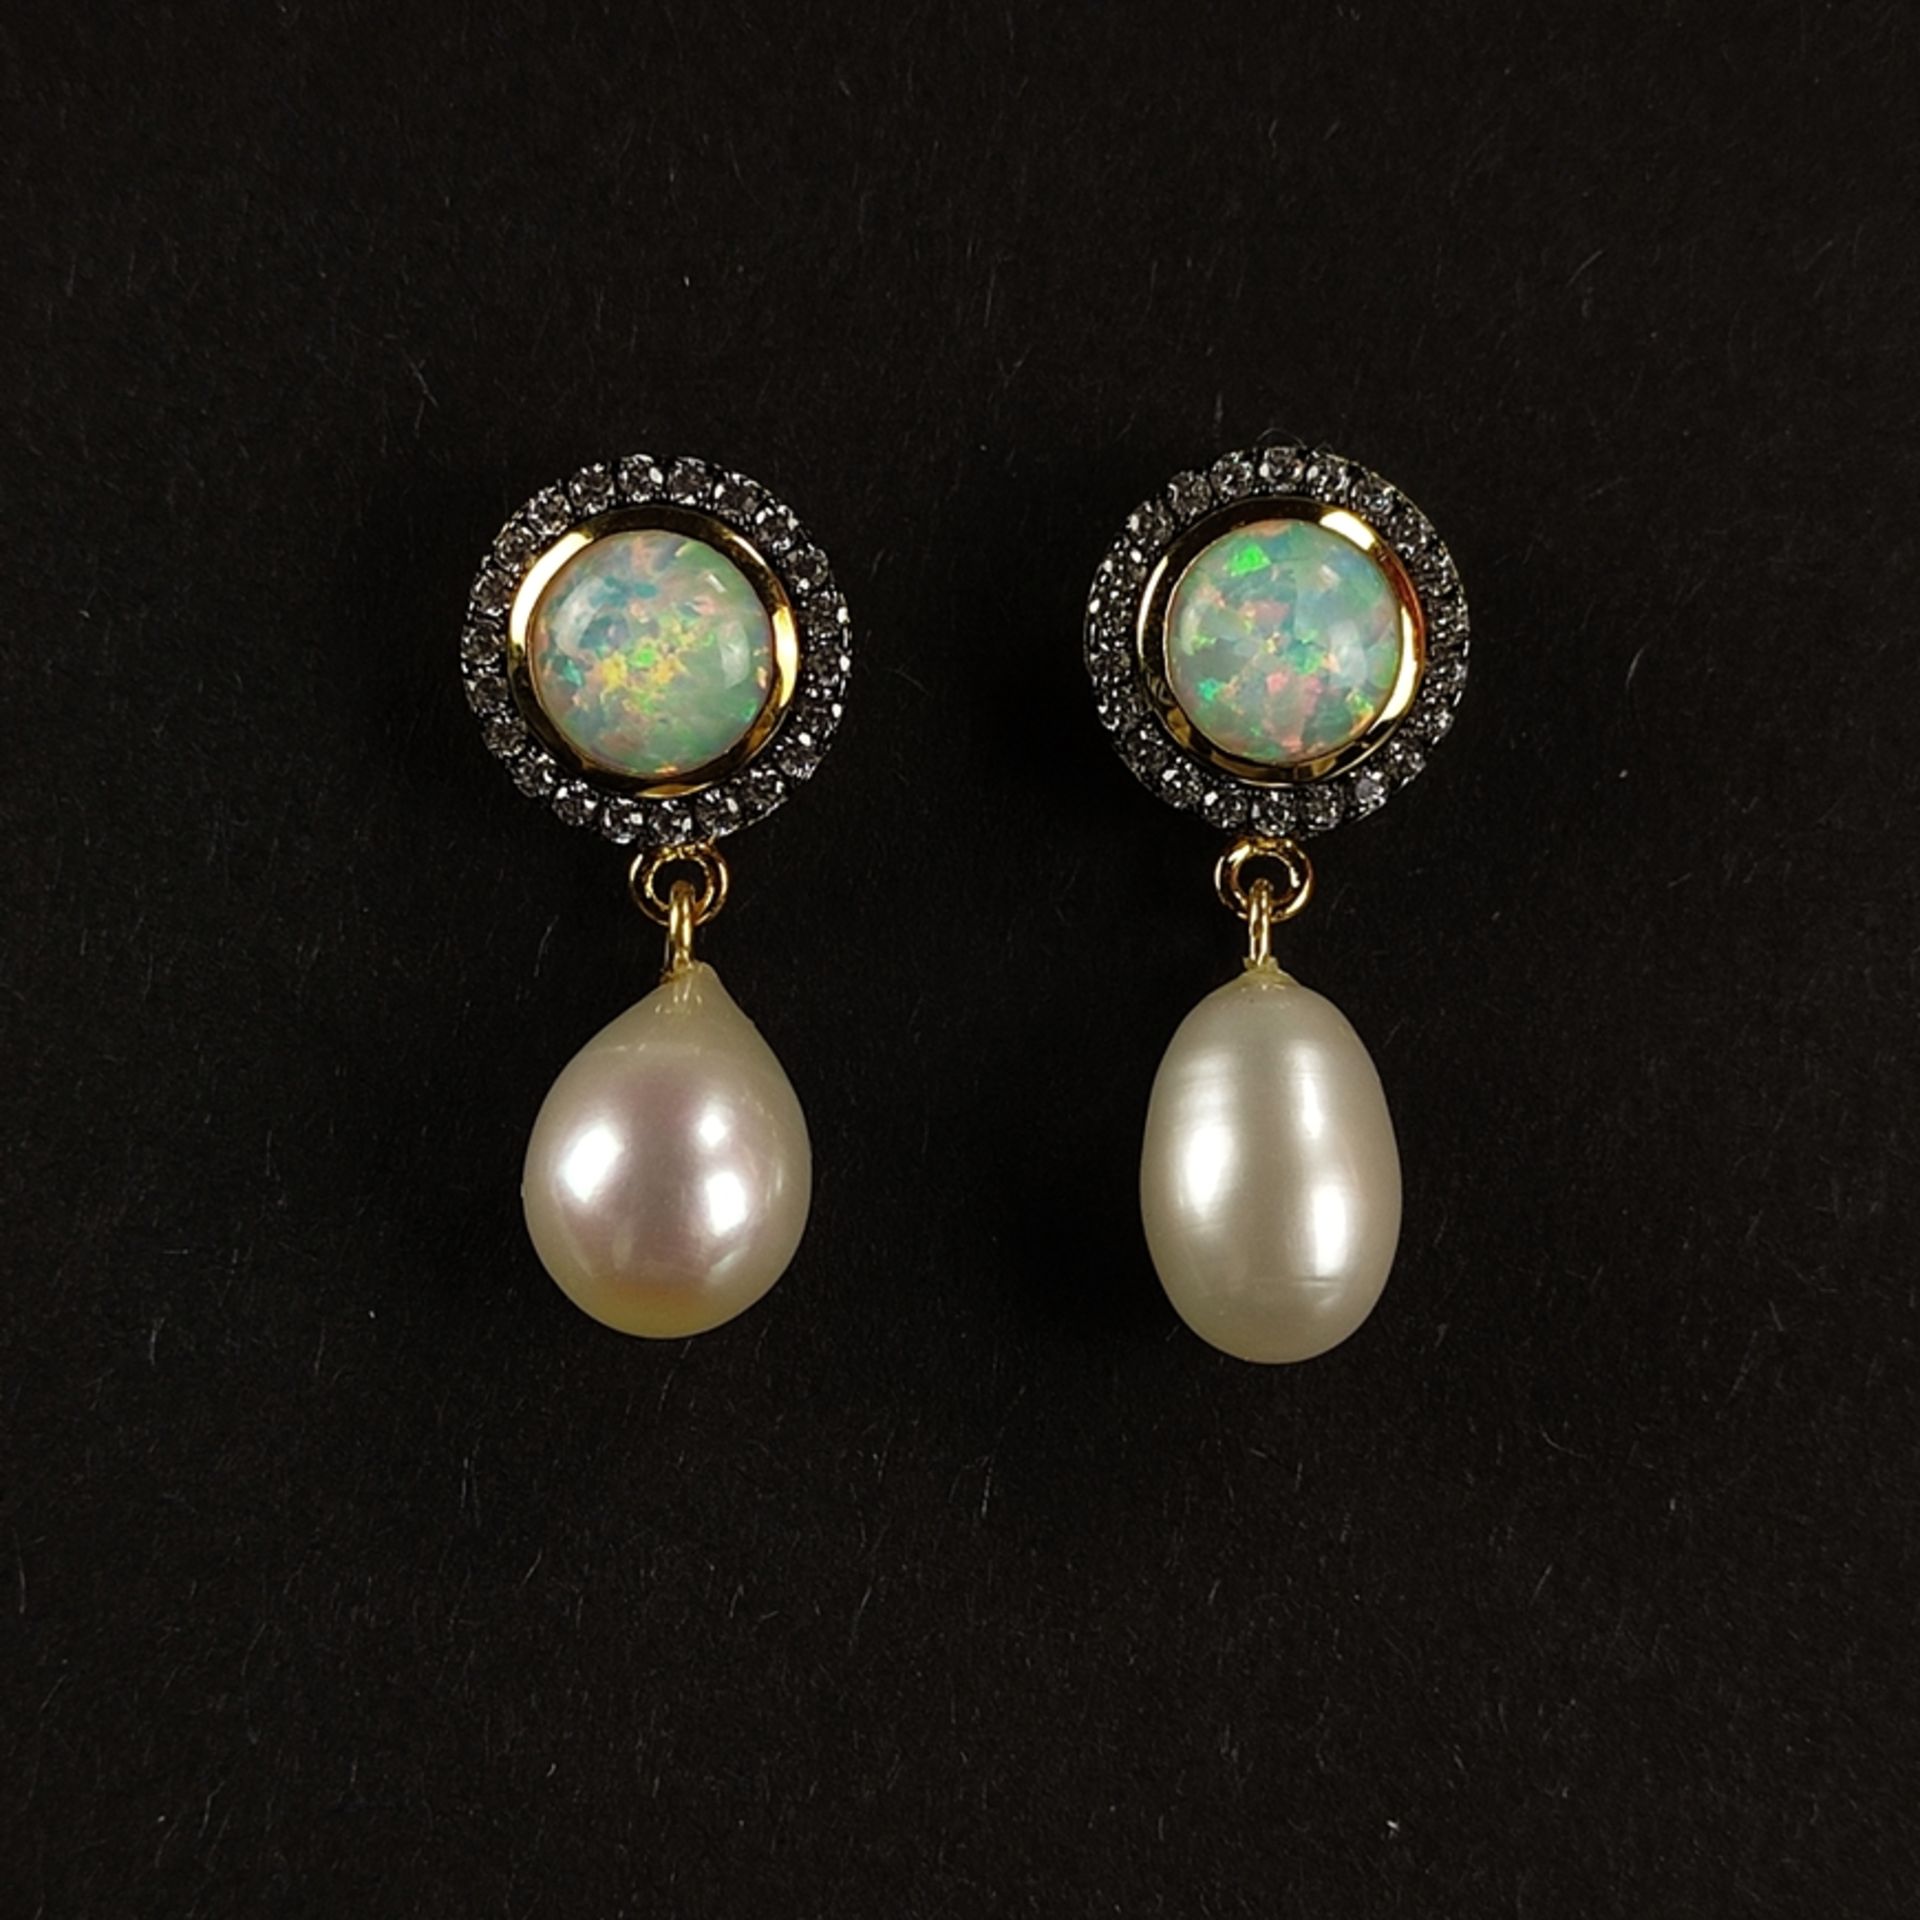 Opal-Ohrstecker mit Perlen, Silber 925 in 585/14K Gelbgold vergoldet, Gesamtgewicht 4,3g, Ohrstecke